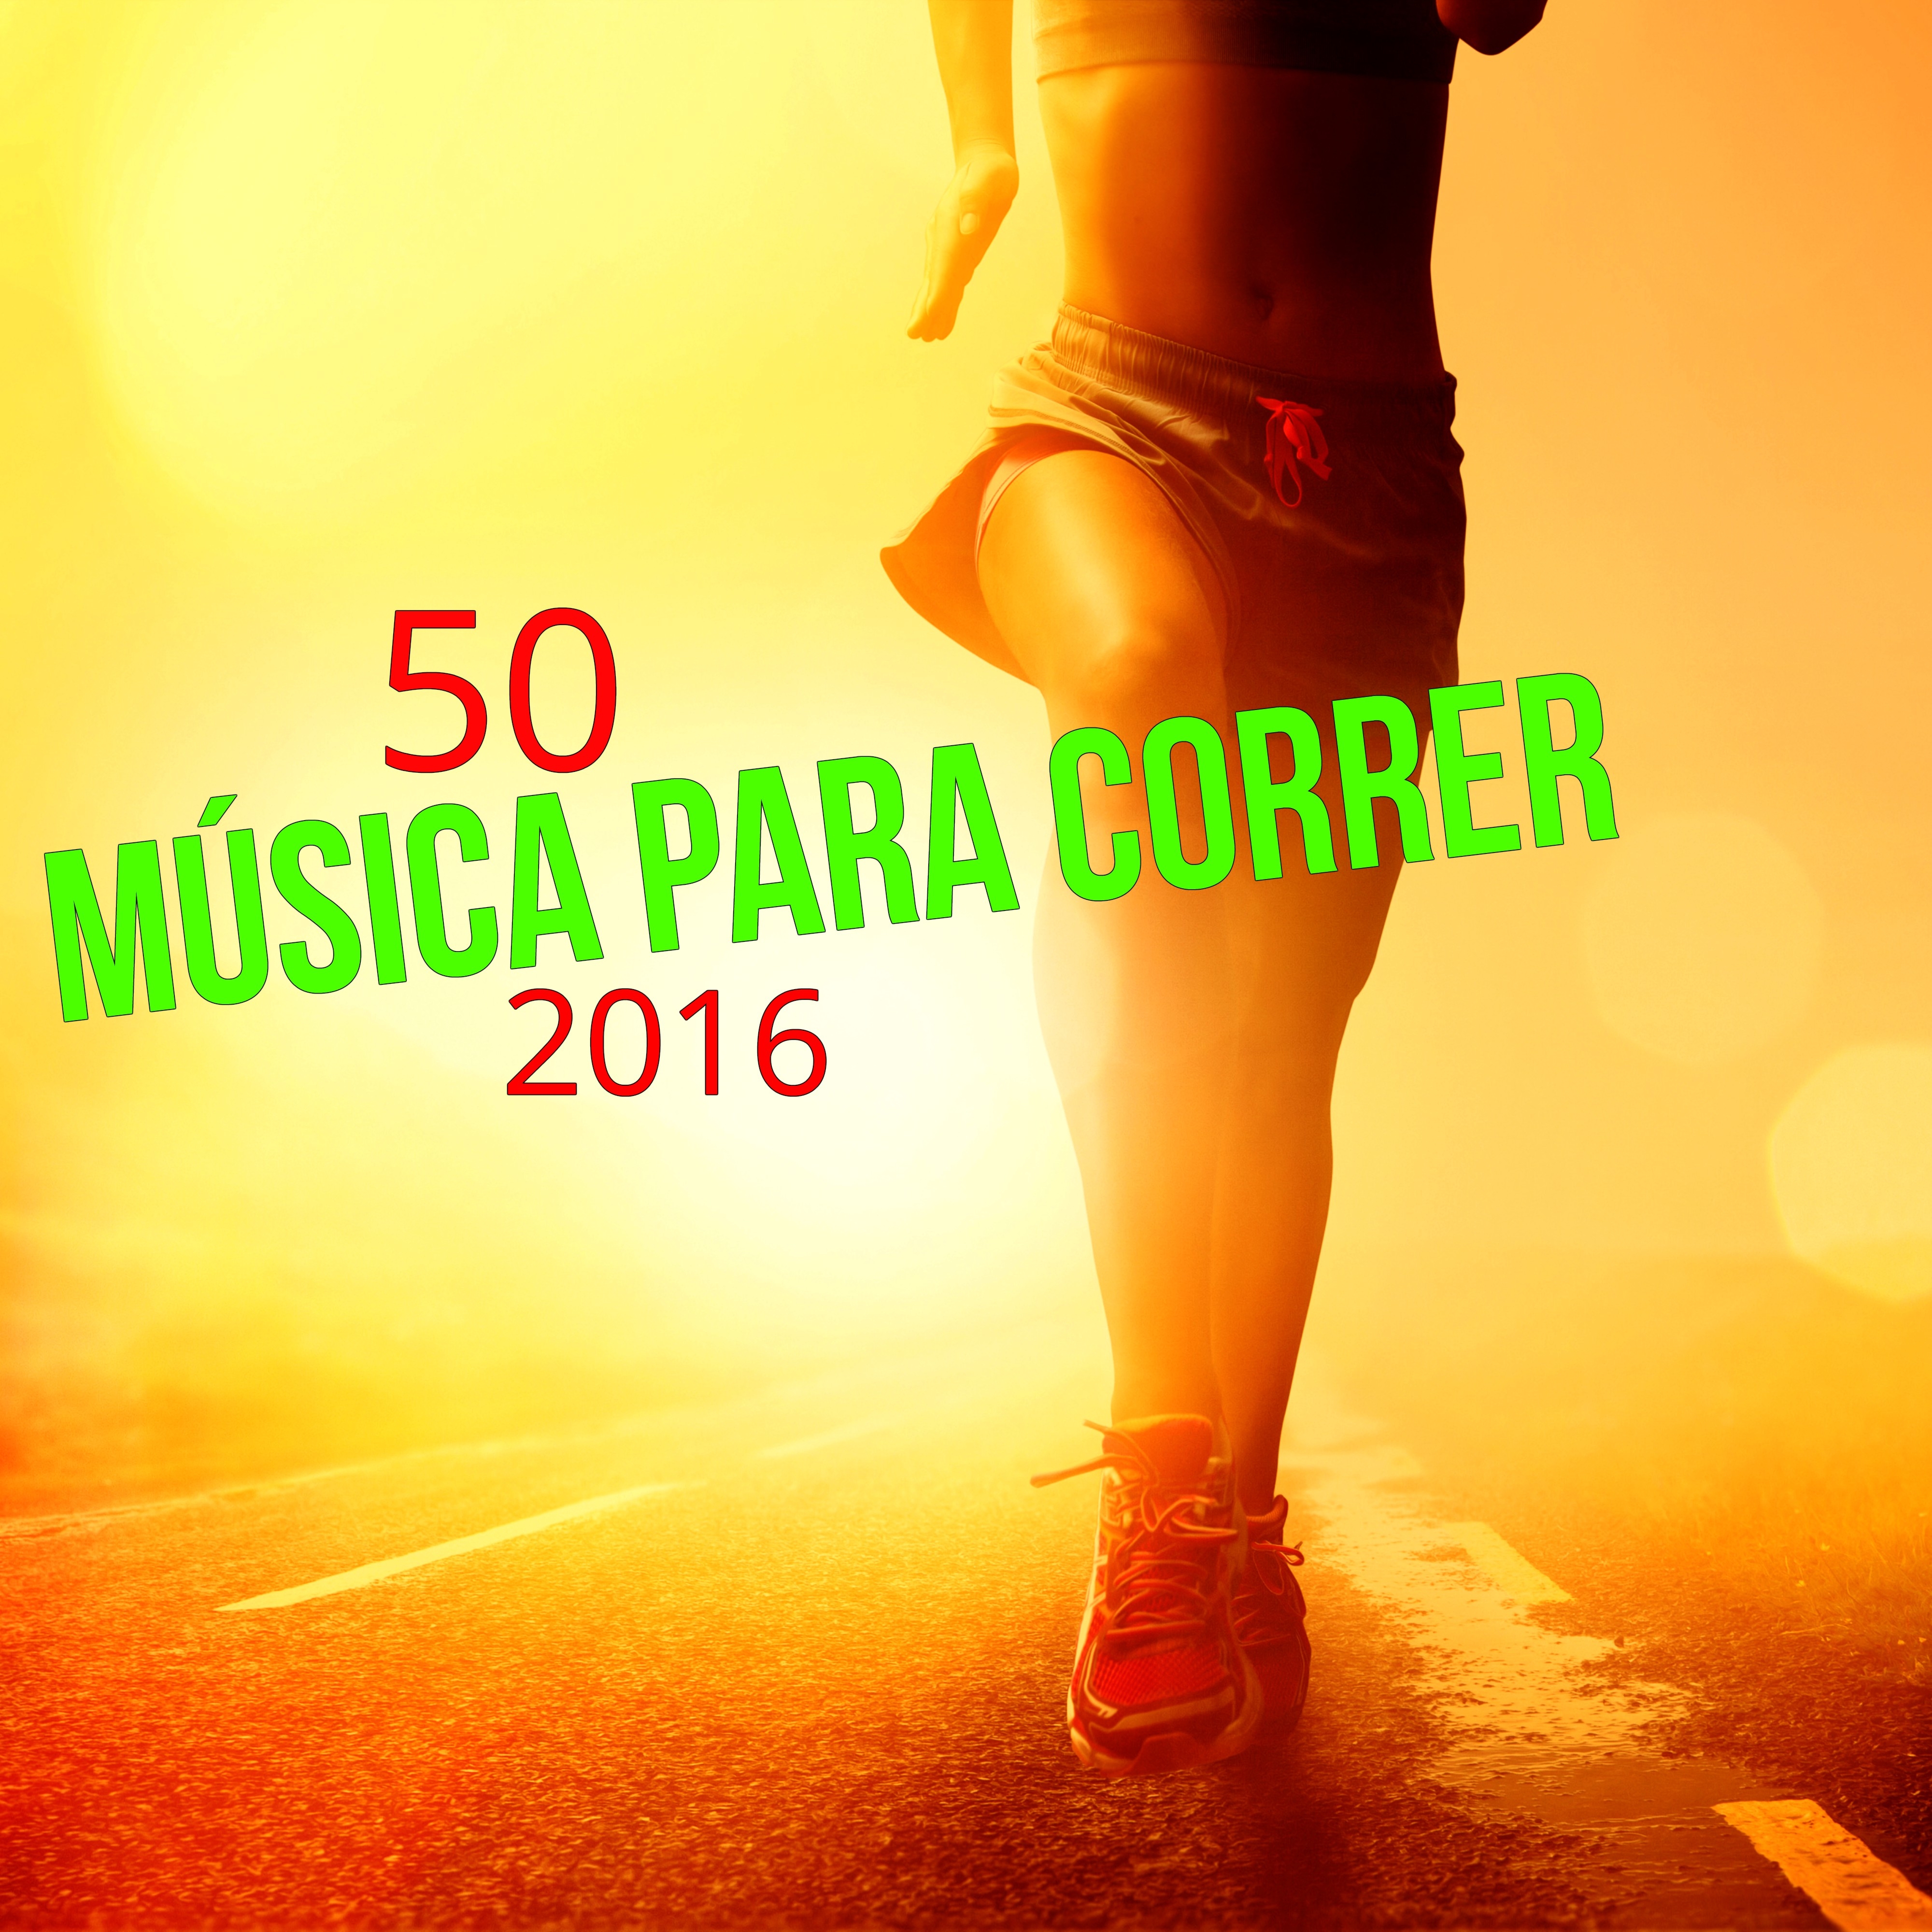 50 Música para Correr 2016 - Las Mejores Canciones para Correr y Ejercicios Aerobicos del Verano 2016